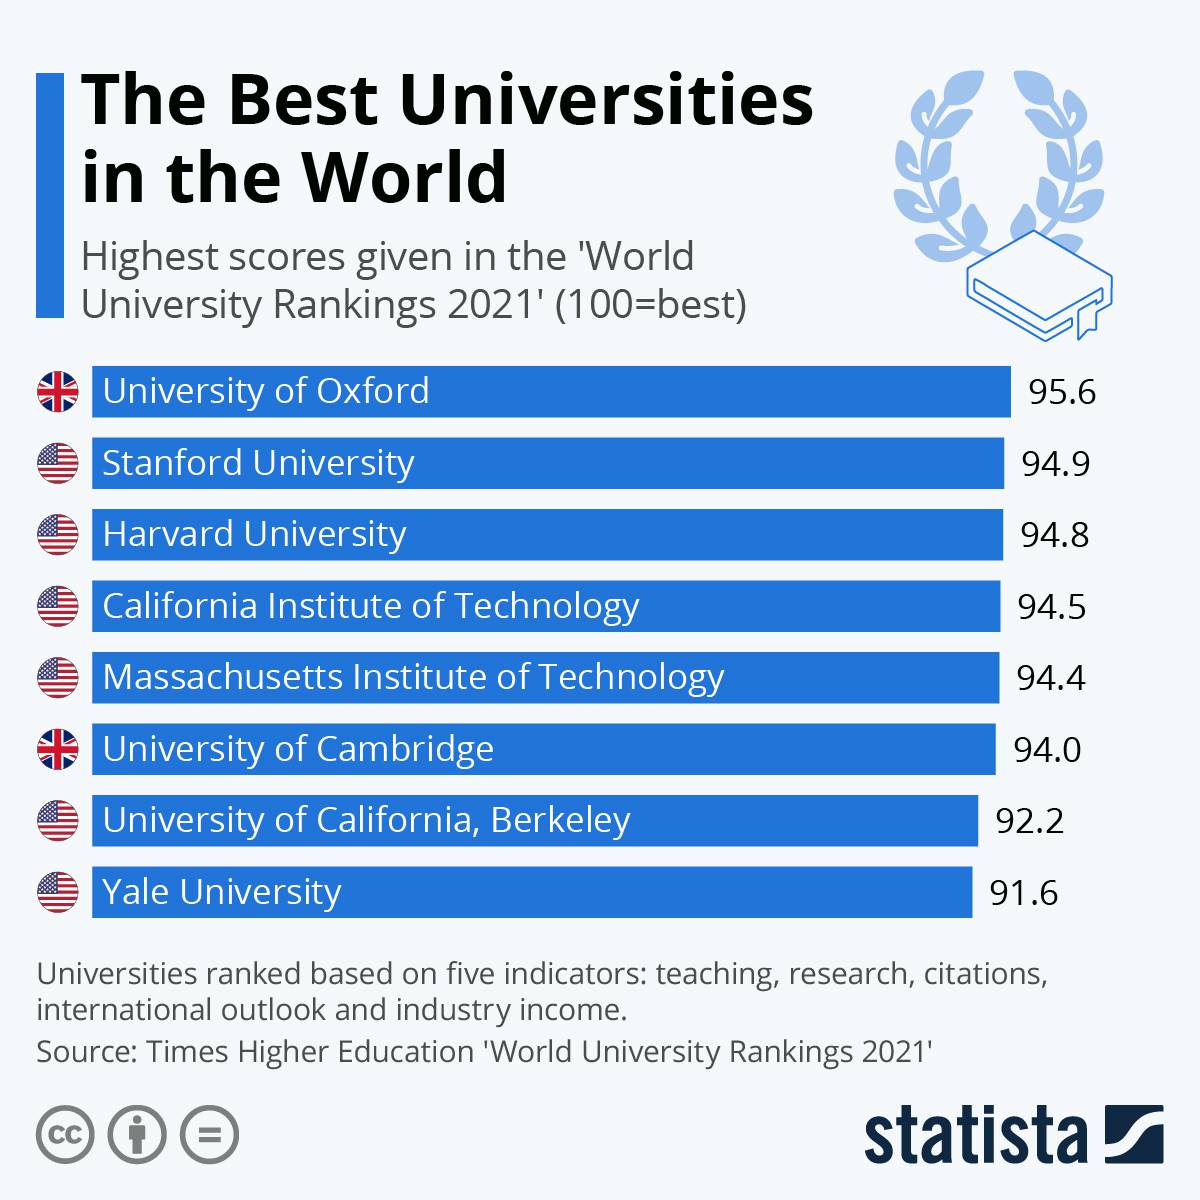 بهترین دانشگاه های جهان